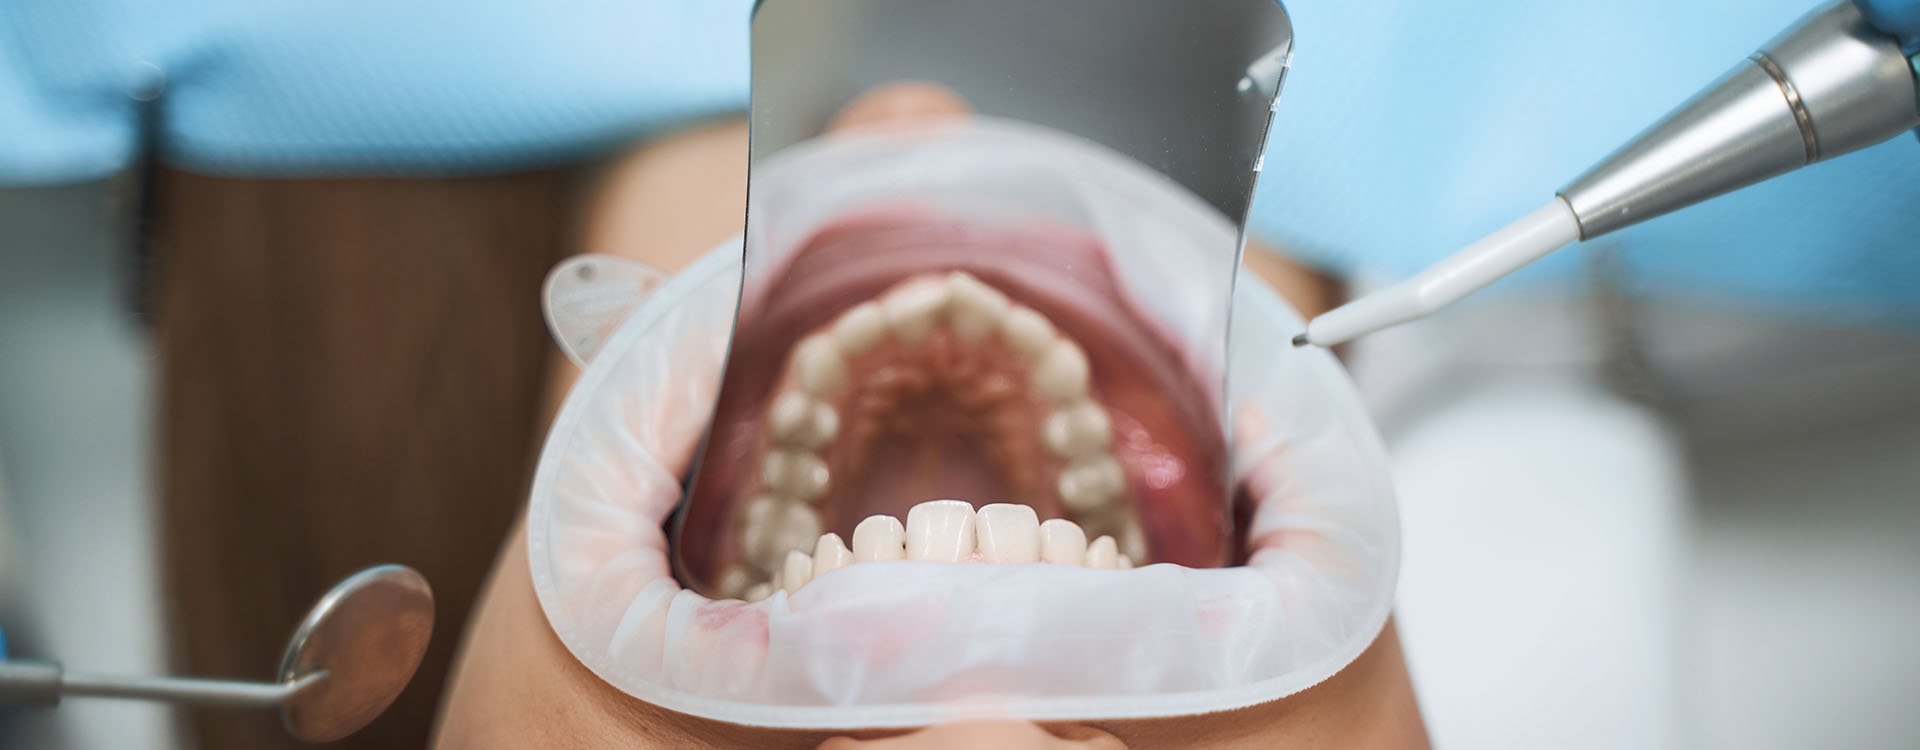 Clínica Dental Andrea Compte, tu Centro Odontológico especializado. Odontología estética en Alcossebre. Paciente recibiendo tratamiento dental estético.